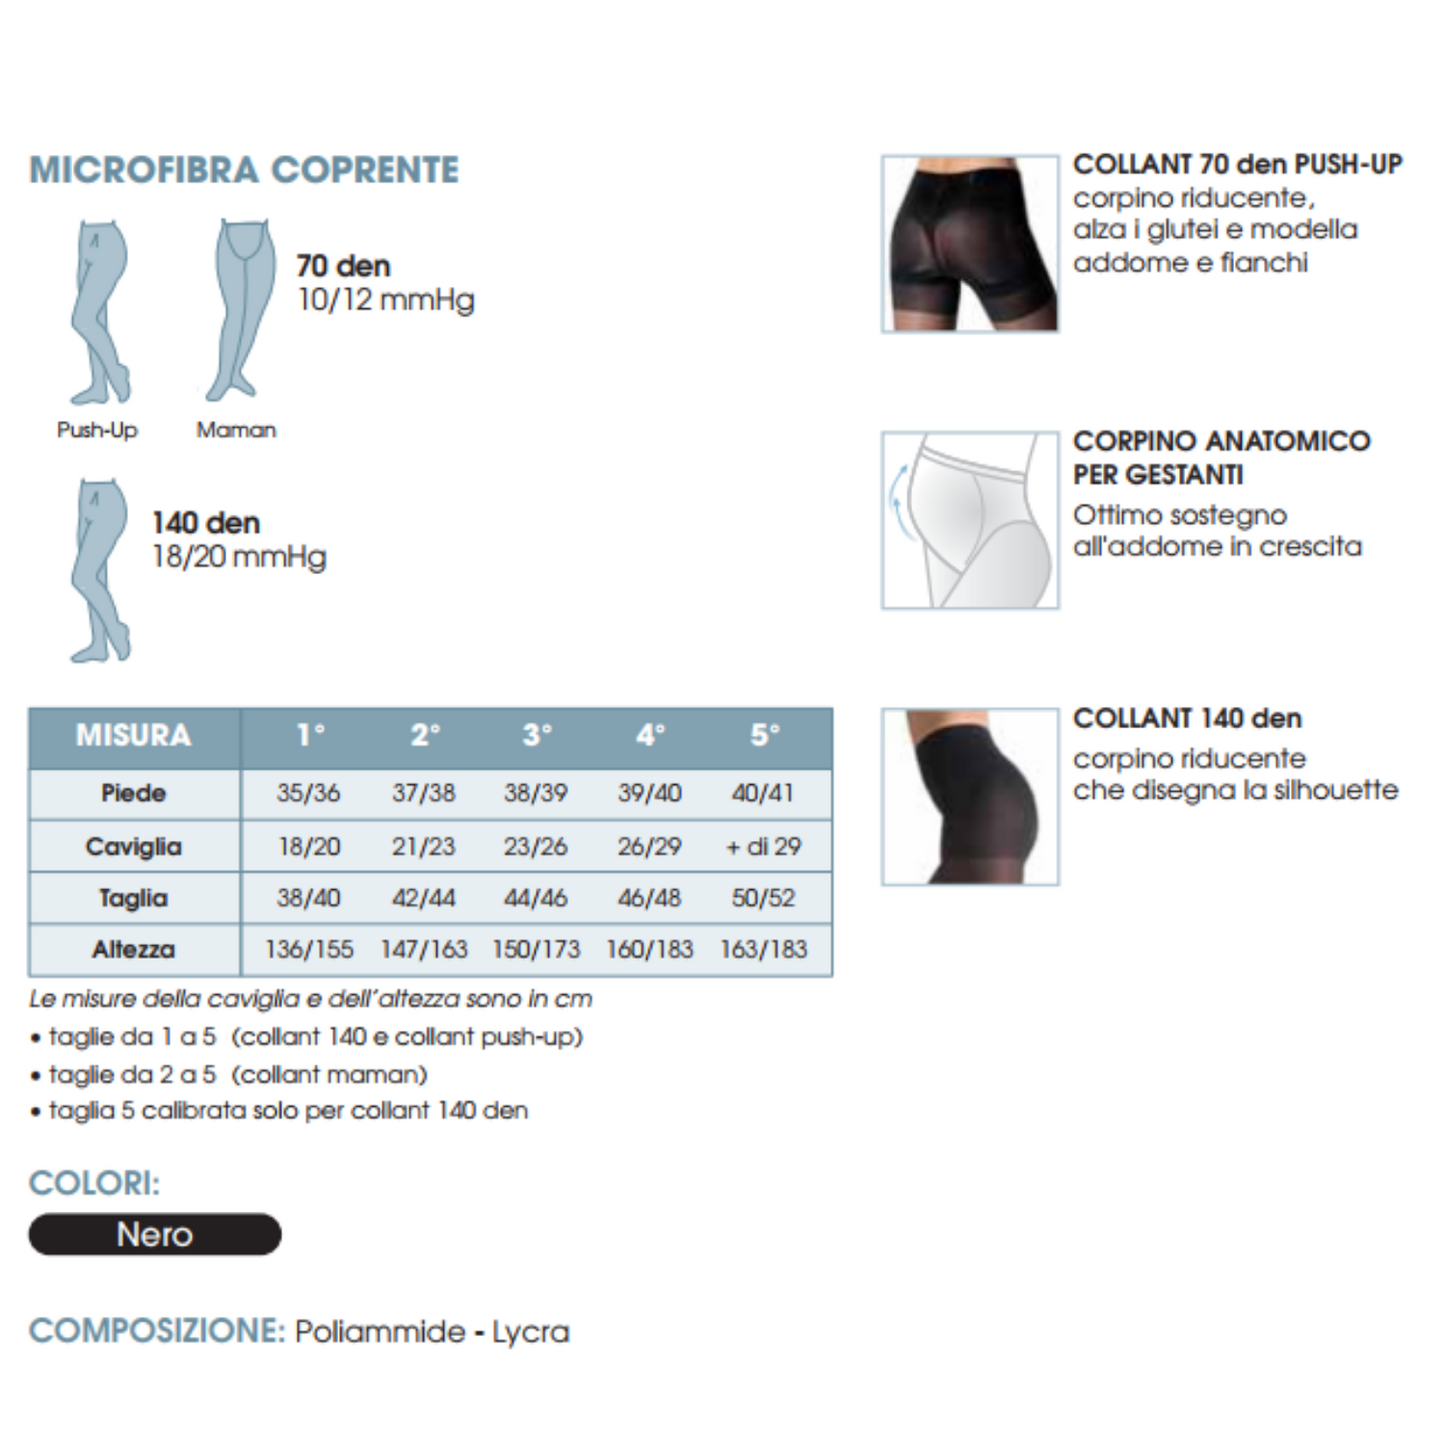 Collant Microfibra 70 Coprente